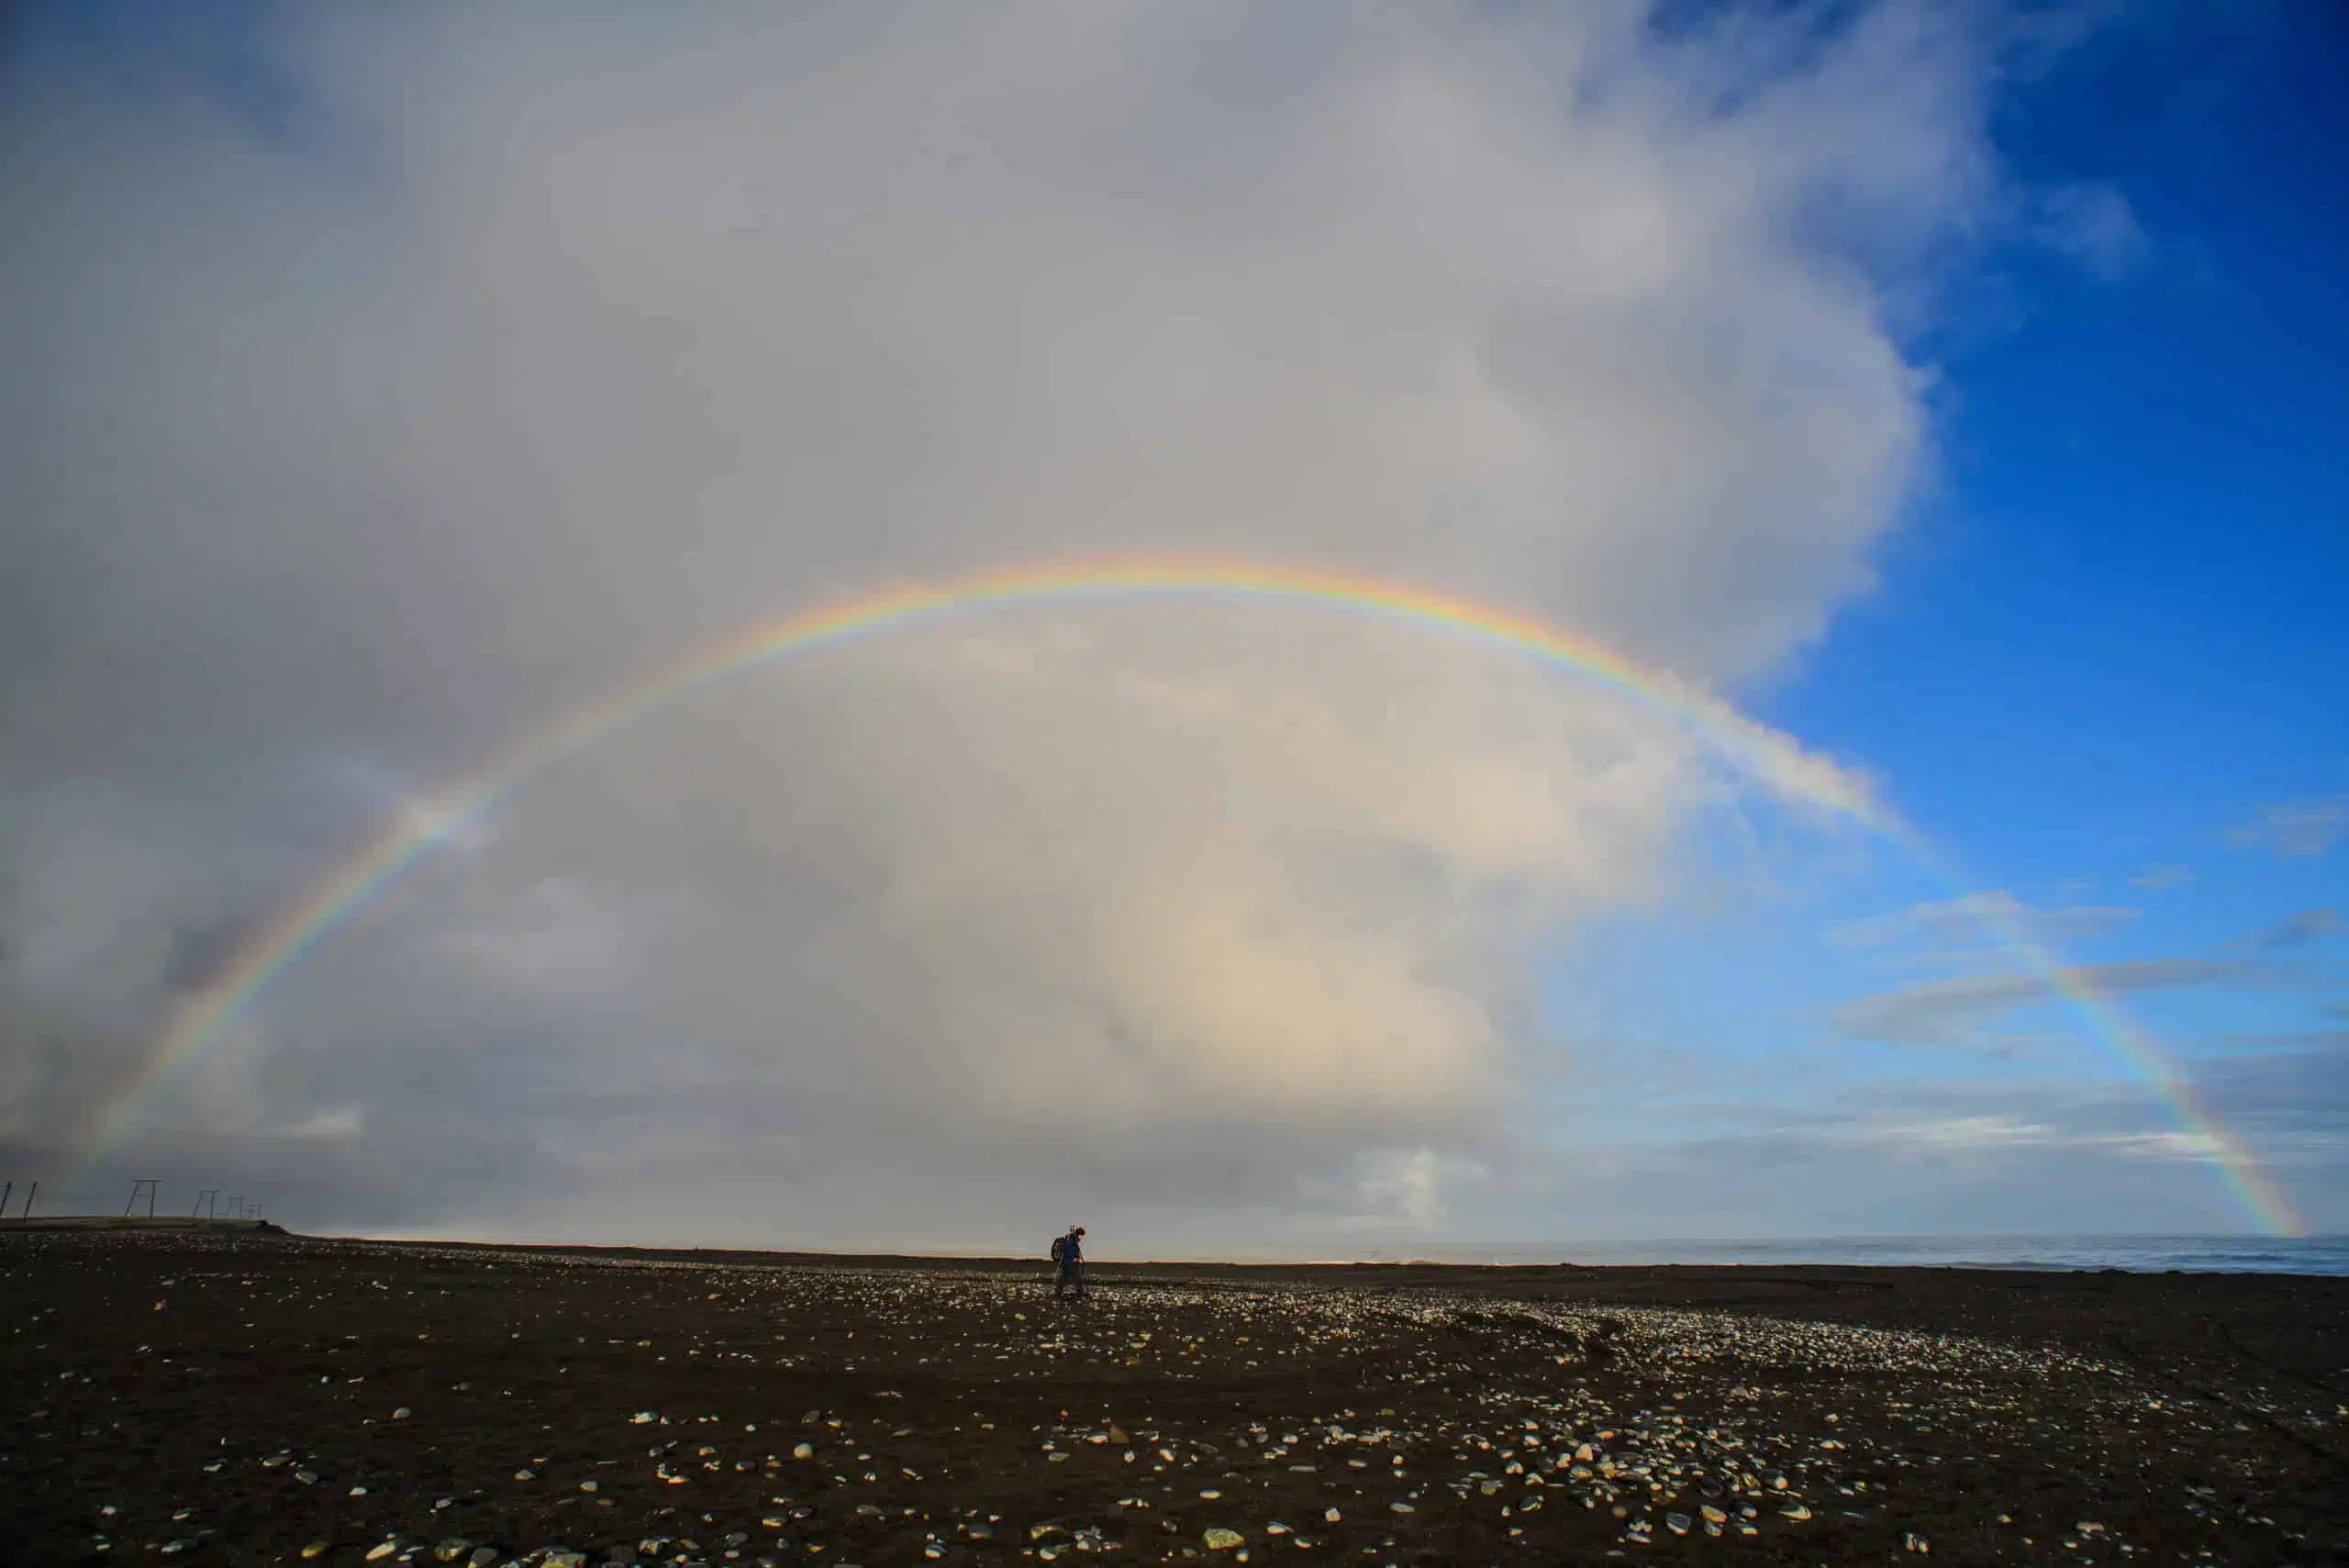 A man walking beneath a rainbow at the beach.